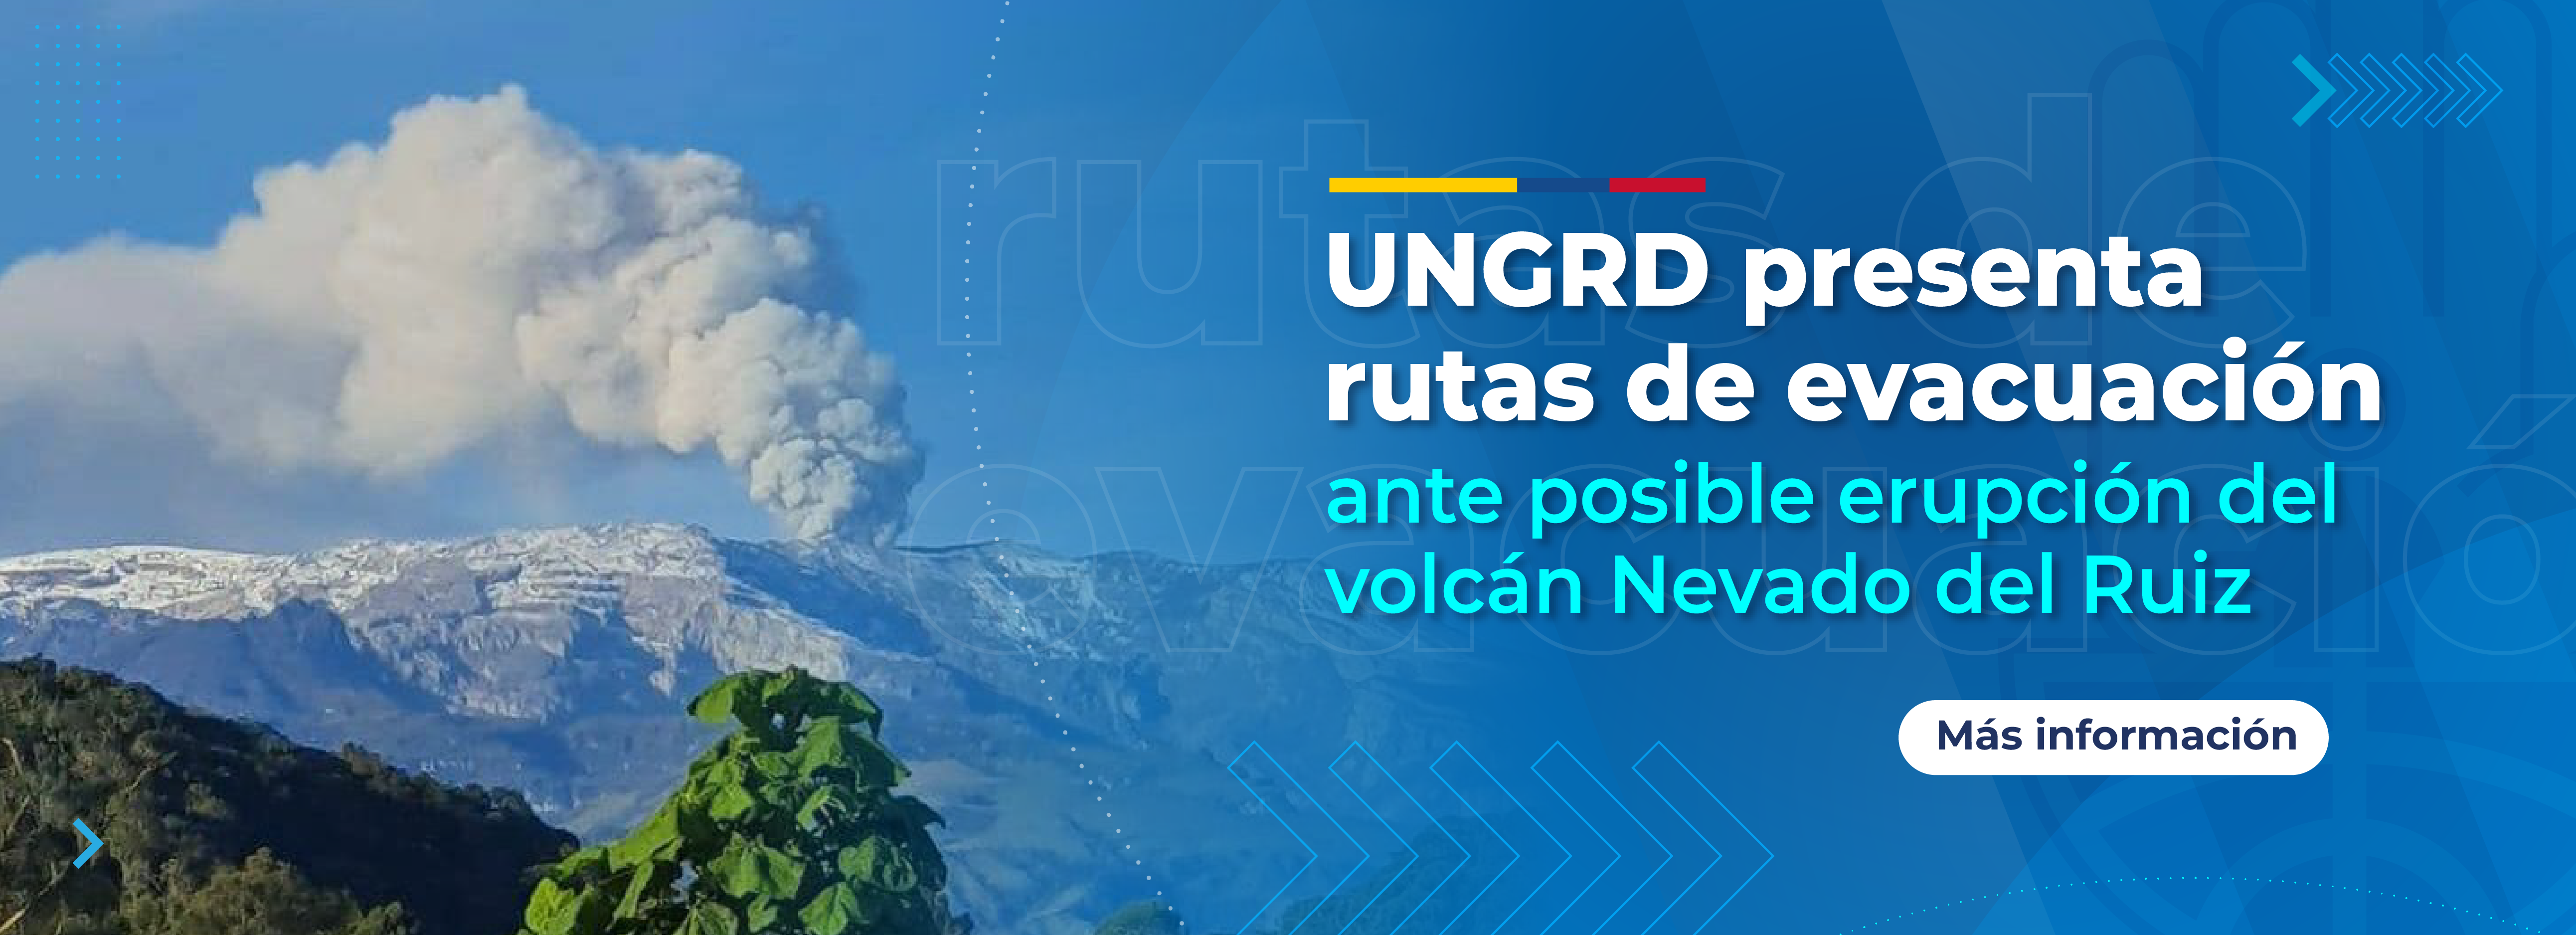 UNGRD presenta rutas de evacuación ante posible erupción del volcán Nevado del Ruiz